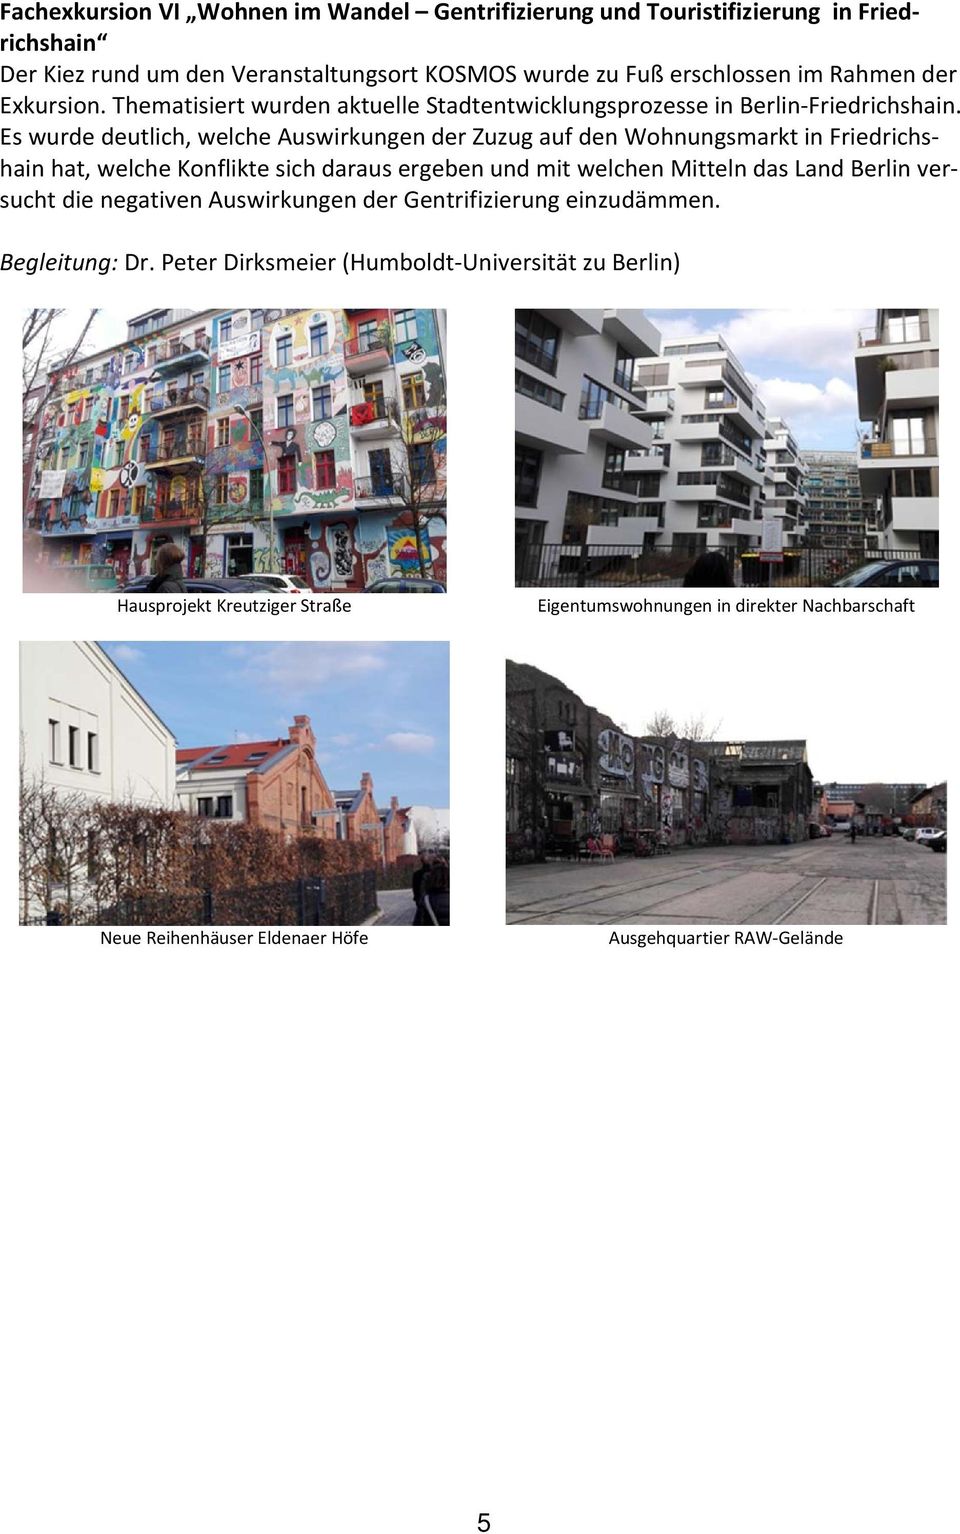 Es wurde deutlich, welche Auswirkungen der Zuzug auf den Wohnungsmarkt in Friedrichshain hat, welche Konflikte sich daraus ergeben und mit welchen Mitteln das Land Berlin